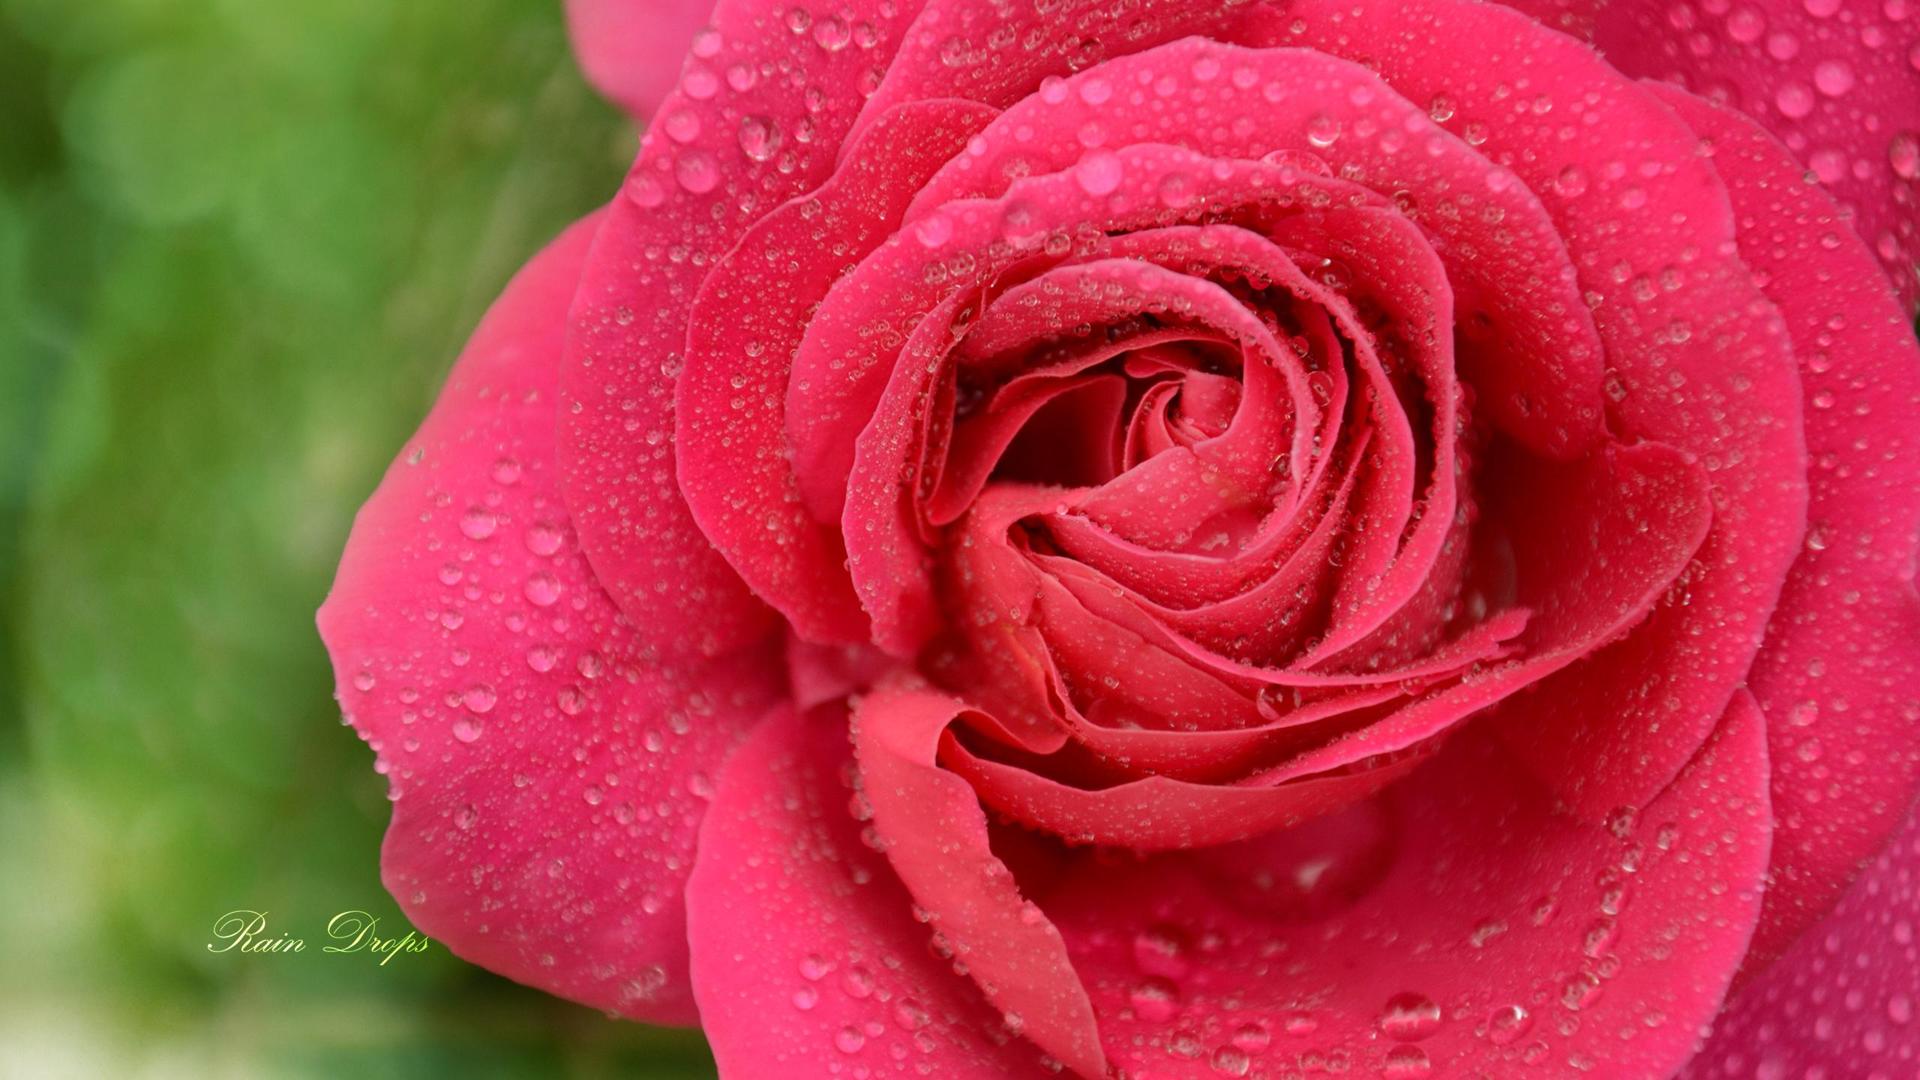 鲜嫩的粉红色玫瑰花图片唯美桌面壁纸-壁纸图片大全